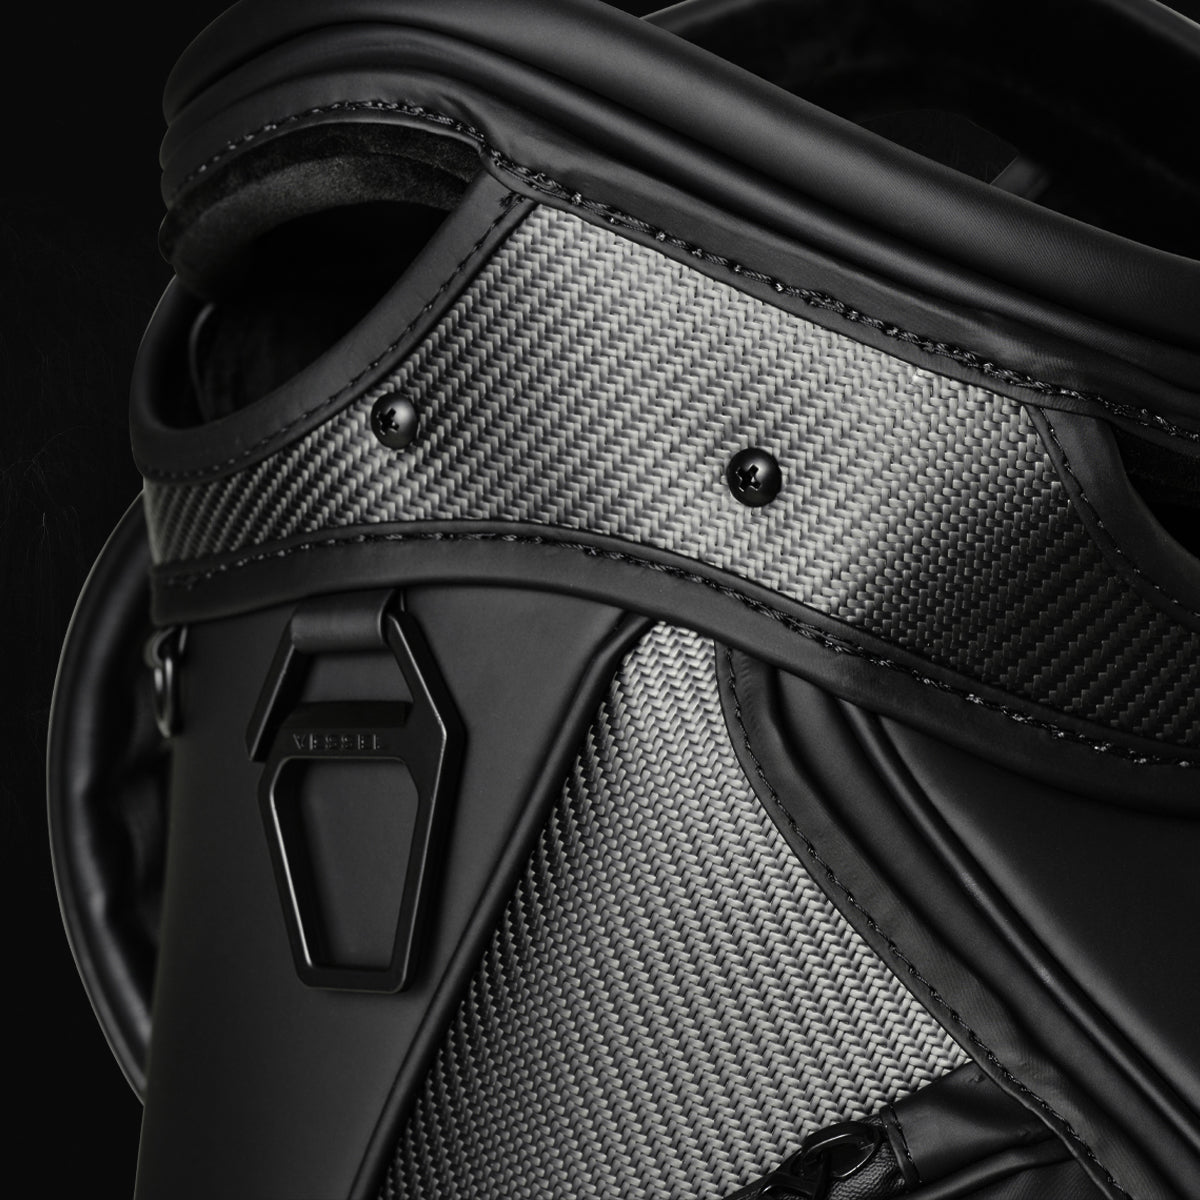 Close up shot of the top of a black carbon fiber golf bag